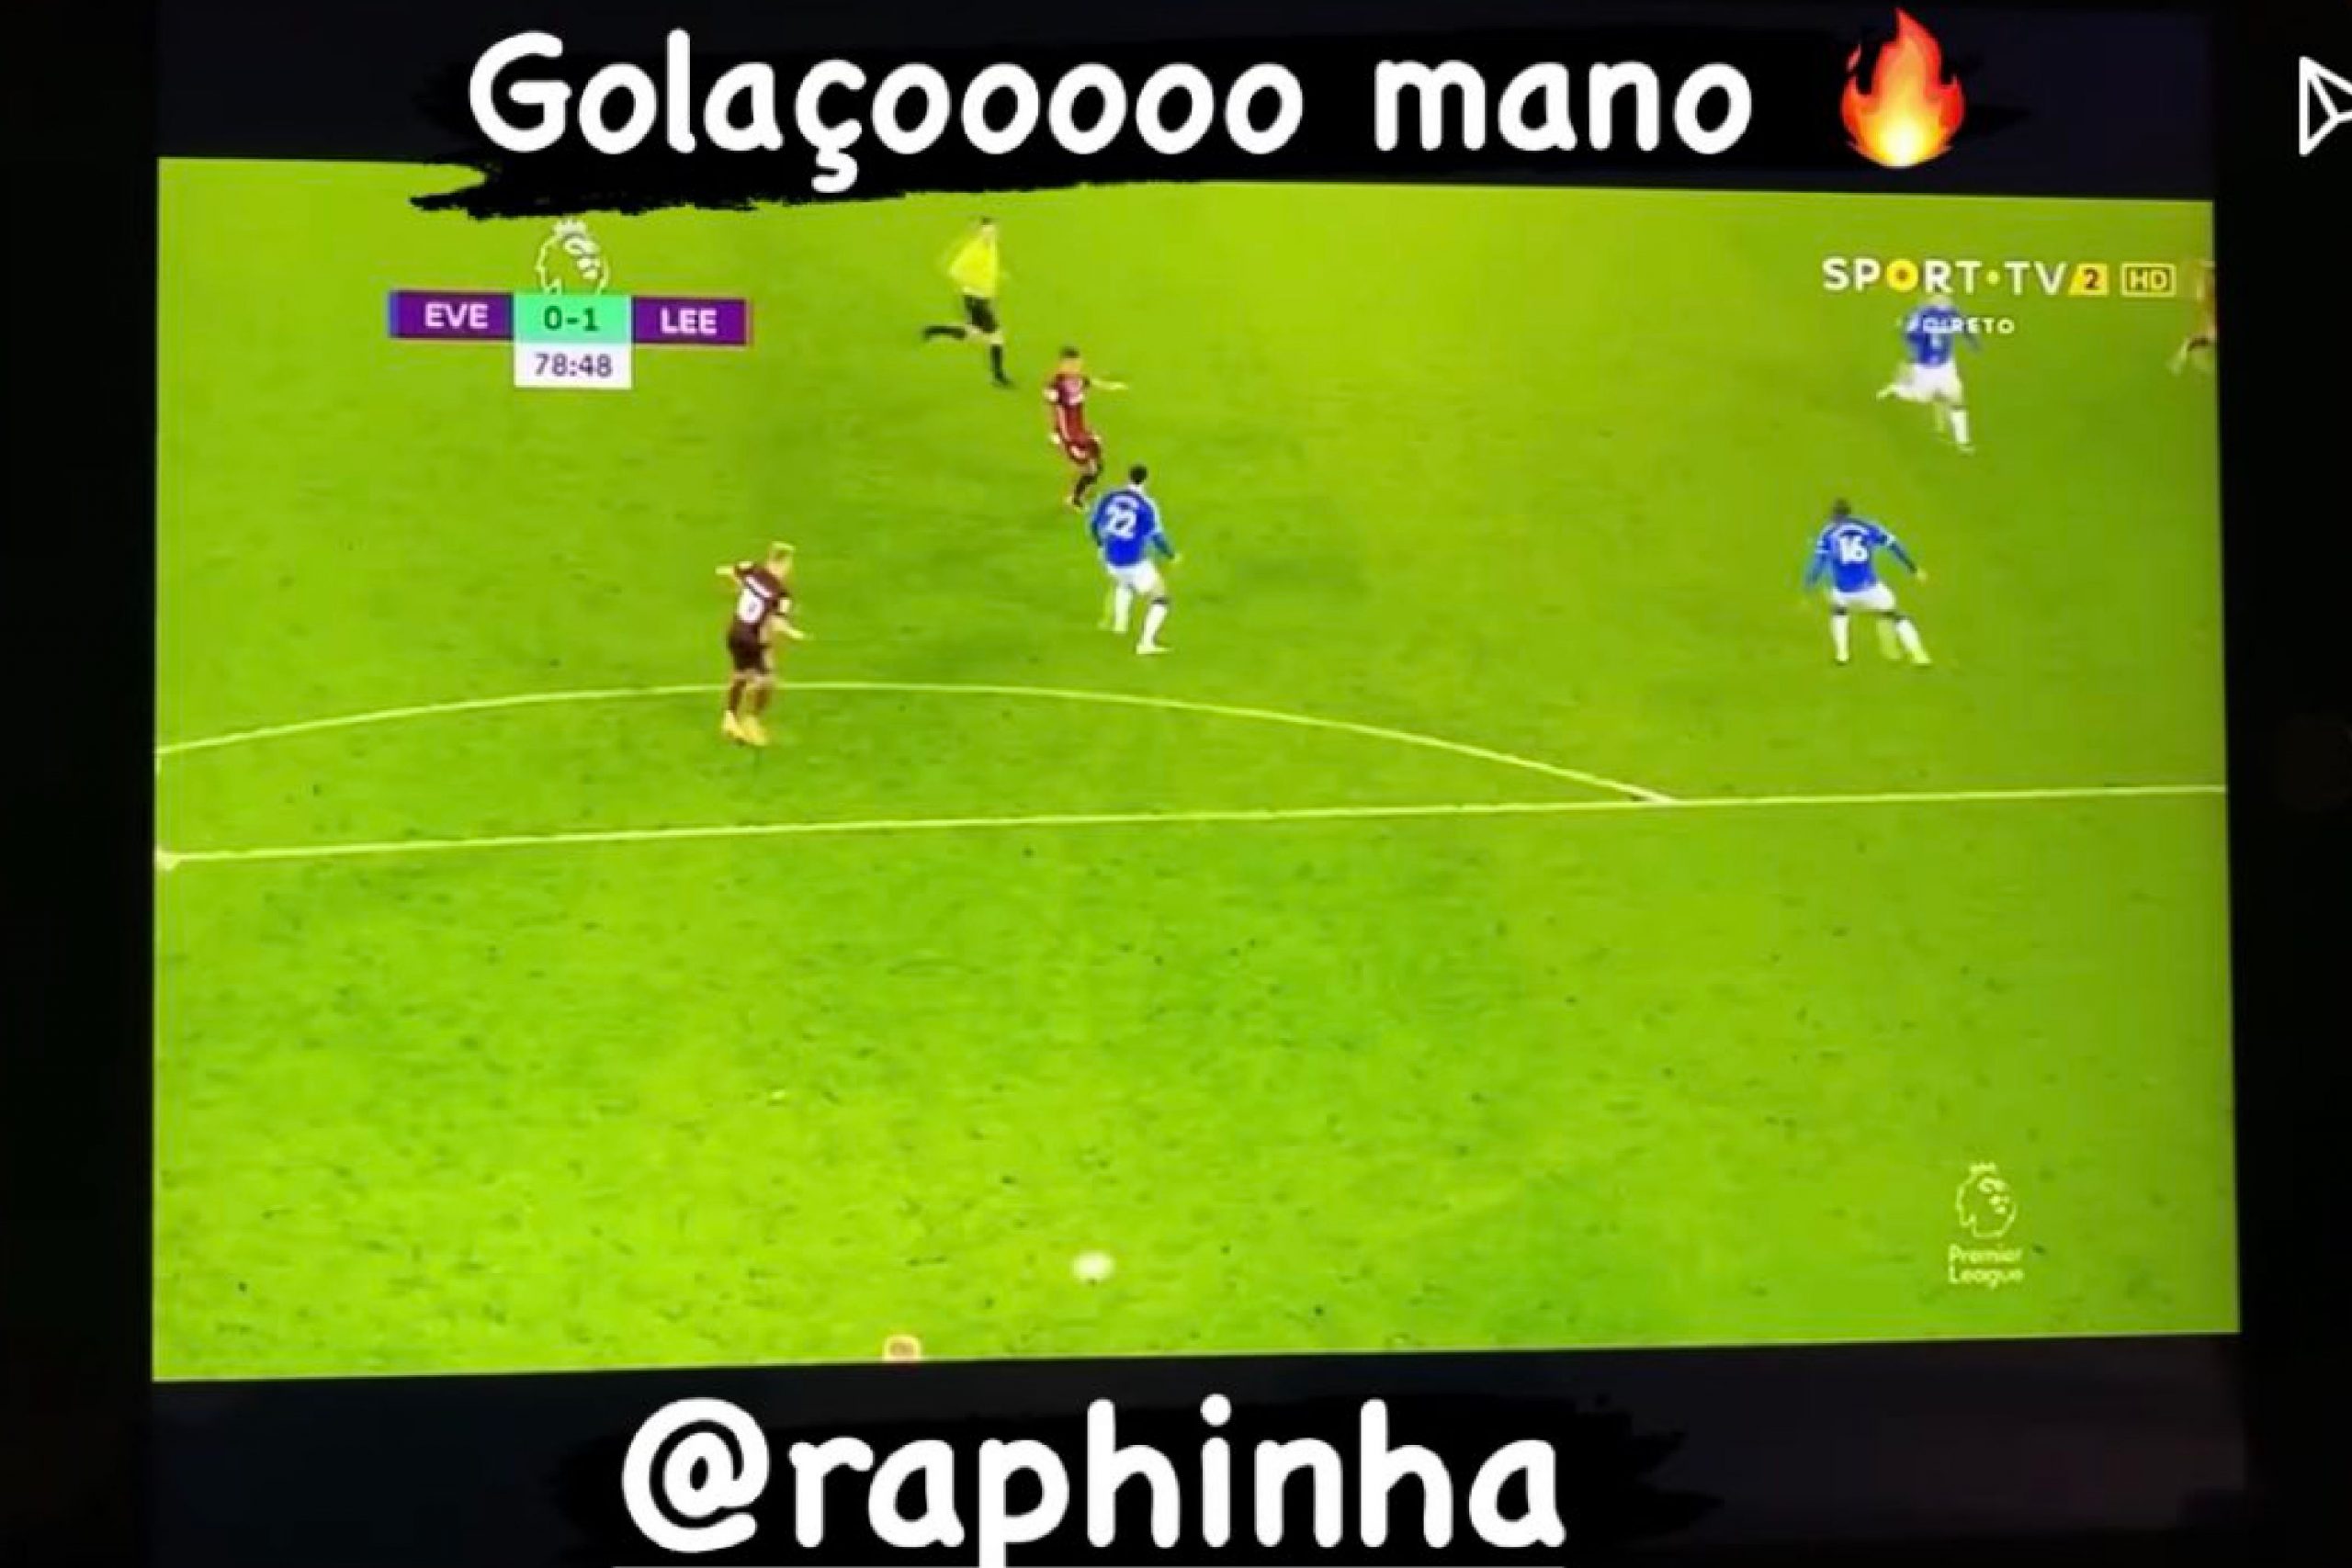 Bruno Fernandes Instagram story after Raphinha goal v Everton